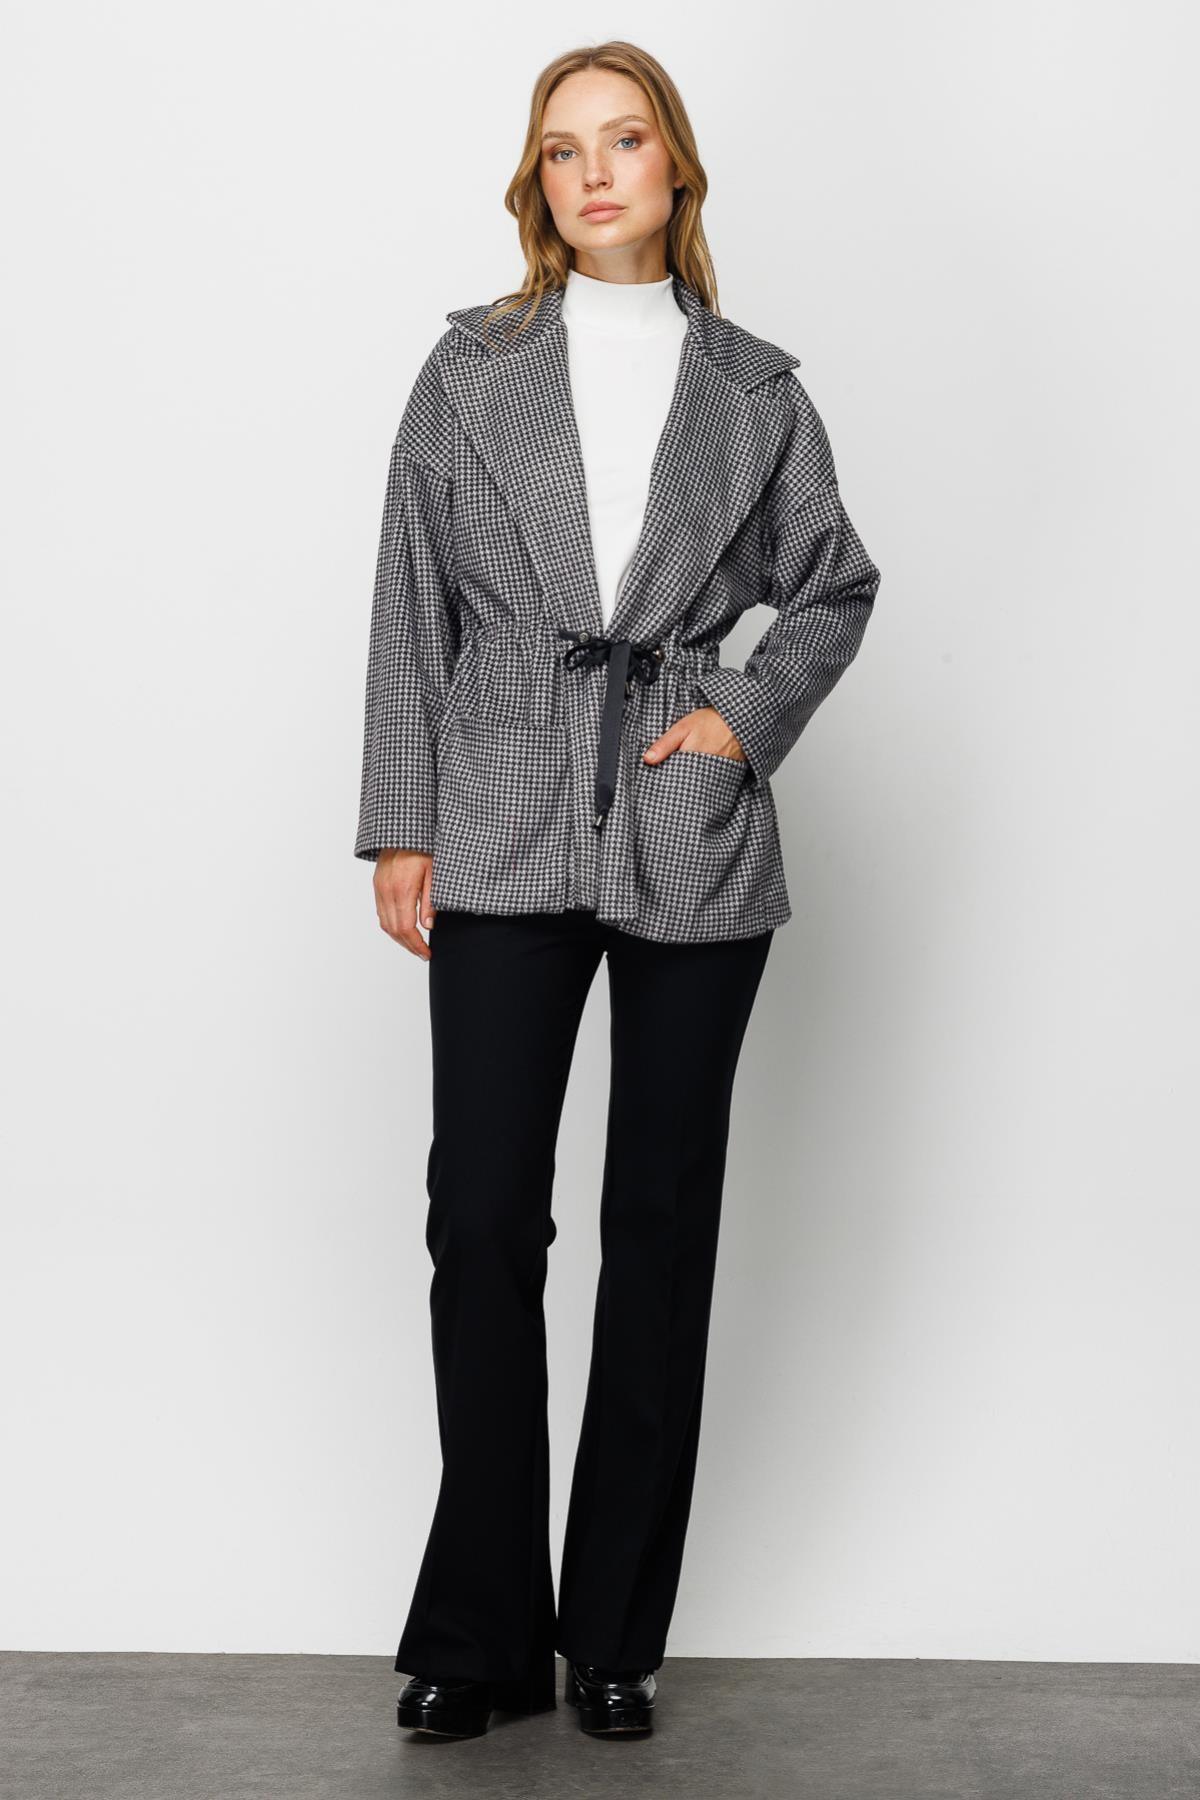 On Triko Şal Yaka Beli Büzgülü Ceket - Eser Giyim